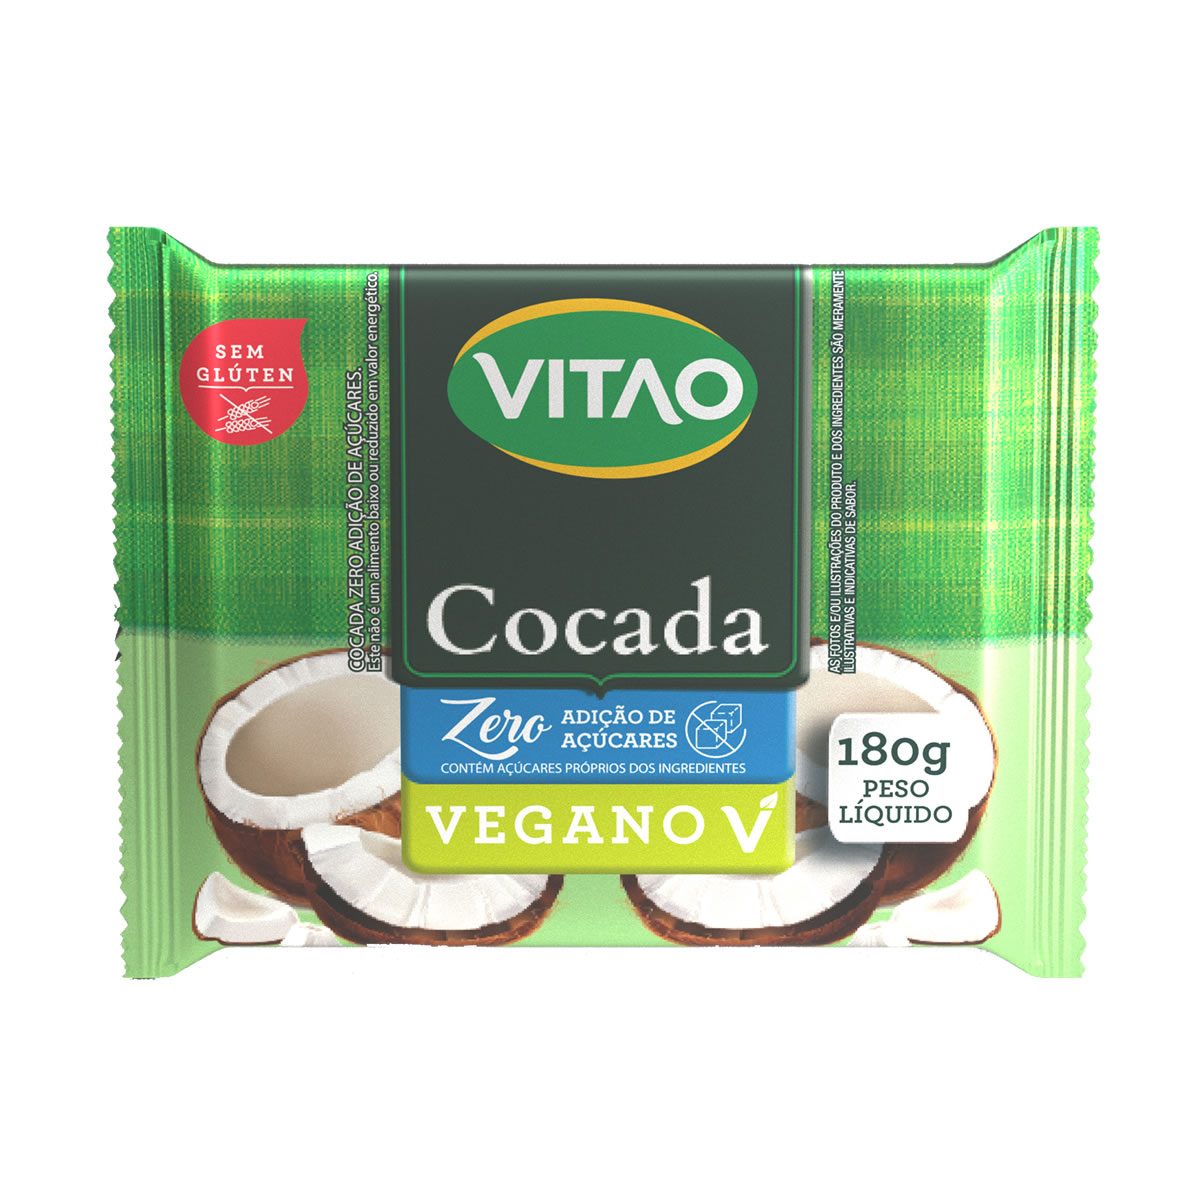 Cocada Zero 180g - Vitao